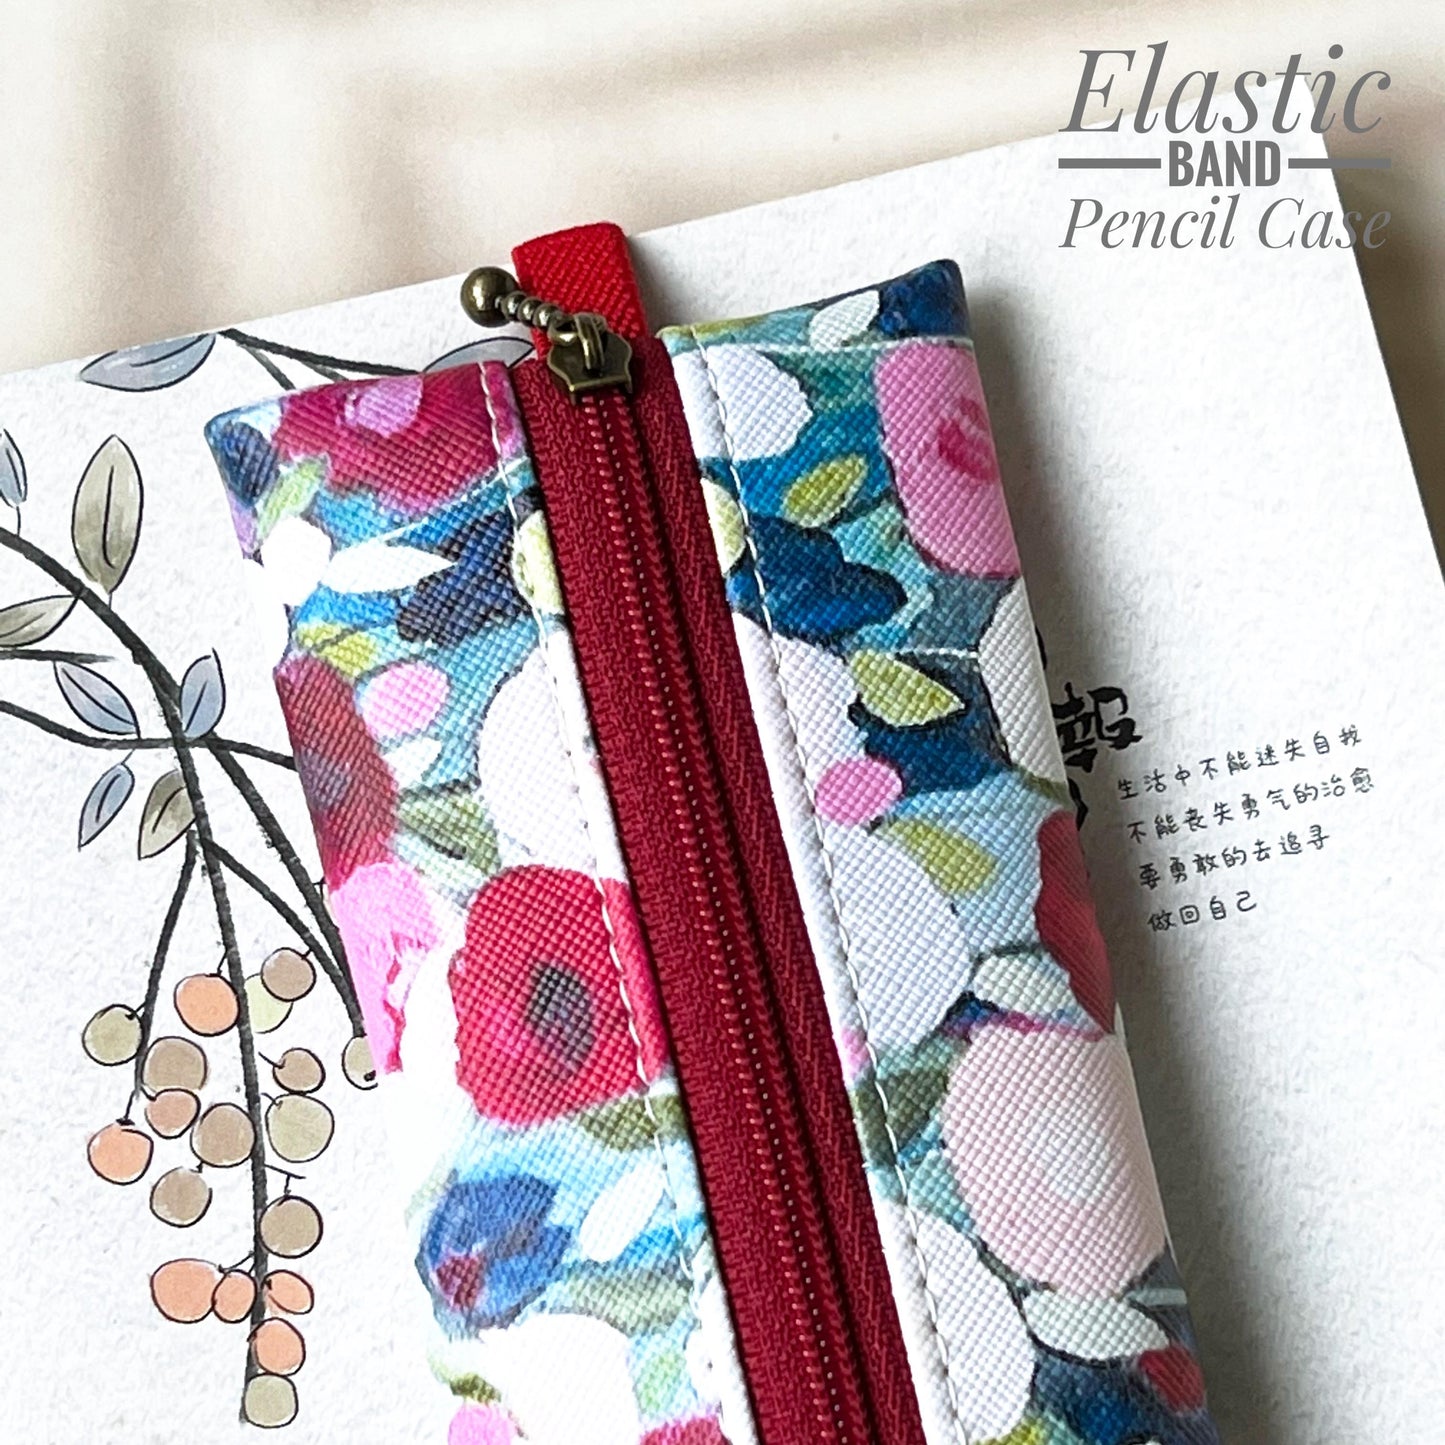 Elastic Band Pencil Case - EBPC11